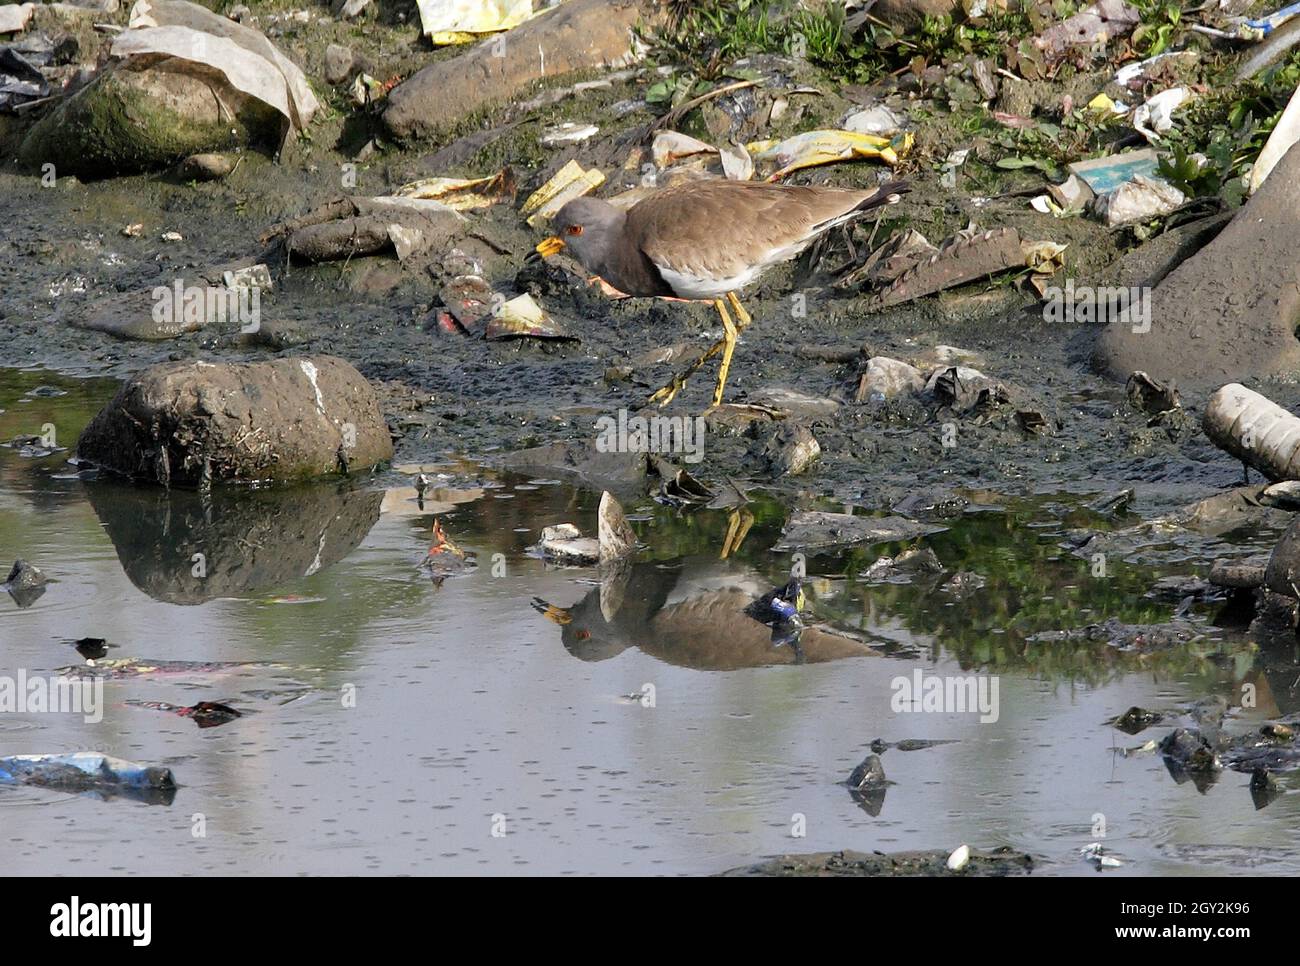 Lapwing à tête grise (Vanellus cinereus) adulte debout sur des détritus au milieu d'une rivière polluée avec réflexion Katmandou, NépalJanvier Banque D'Images